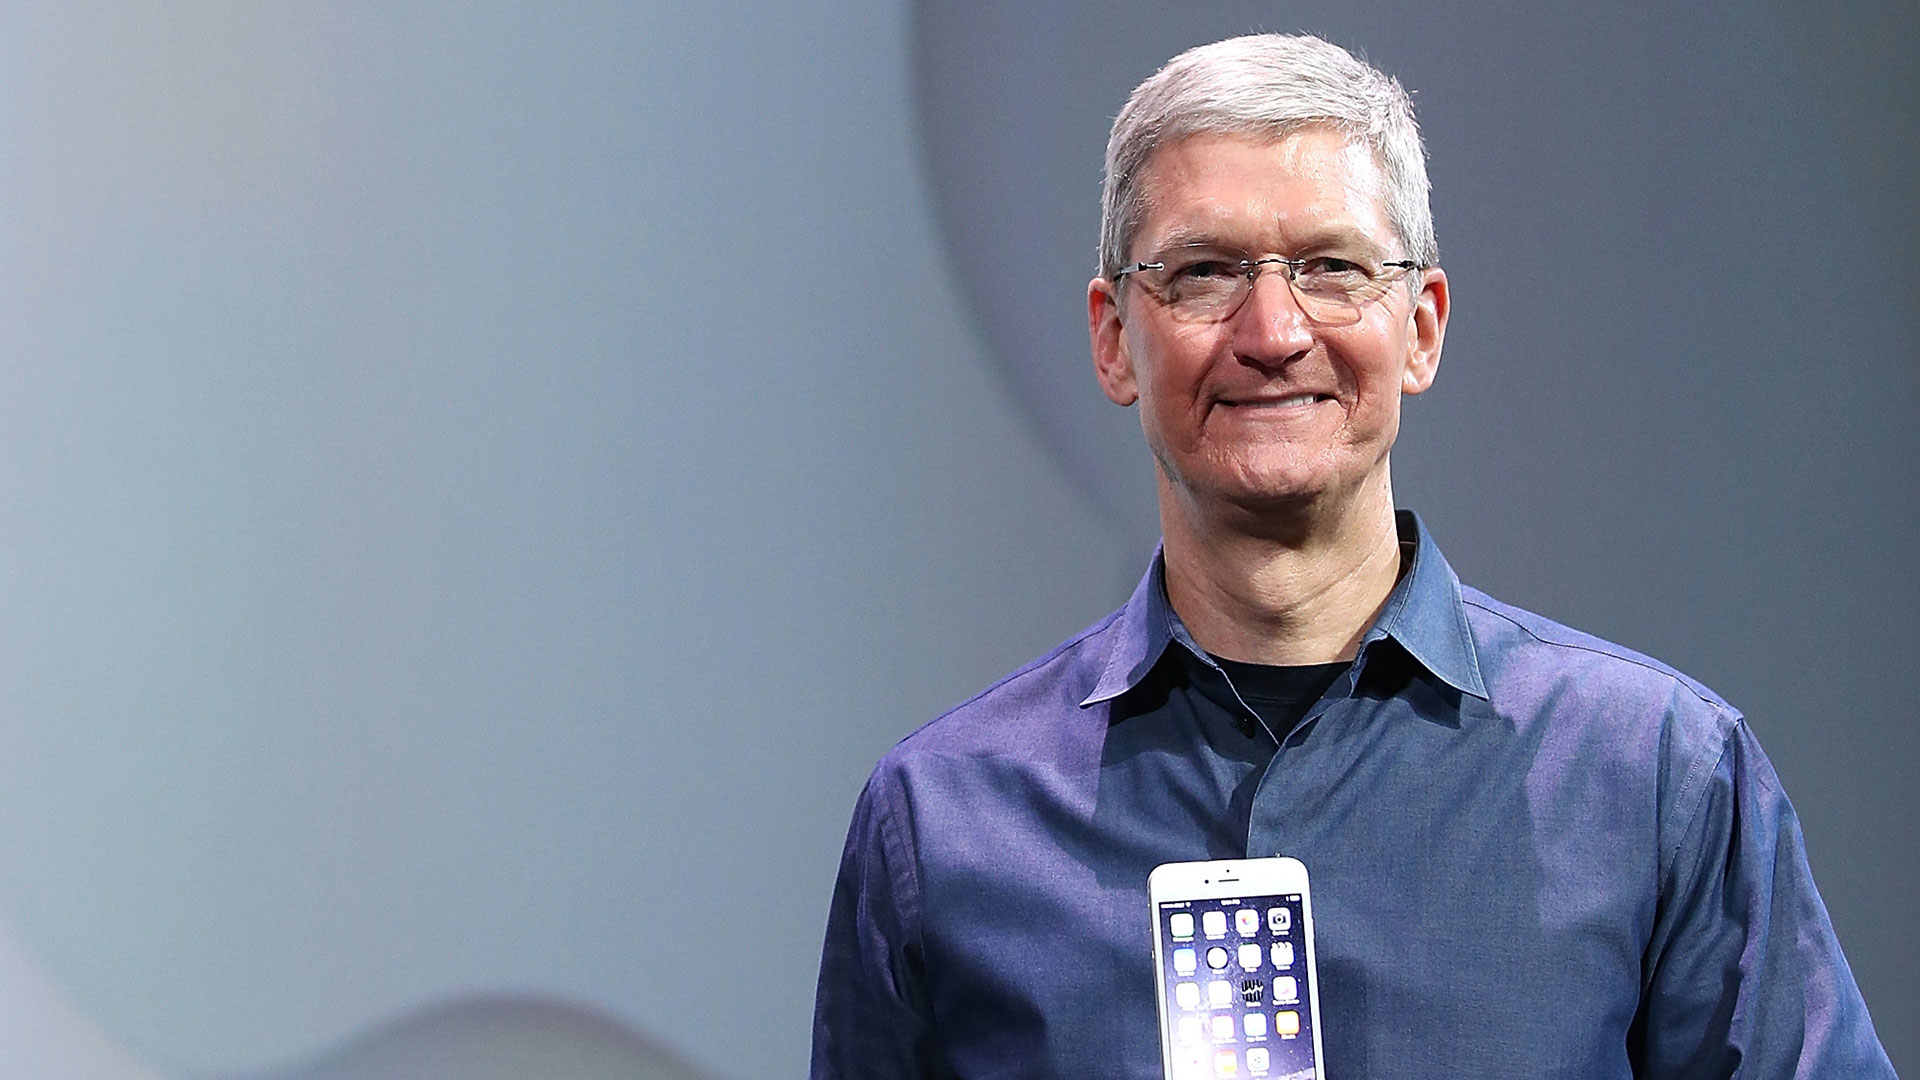 Apple liefert unglaubliche vierteljährliche Zahlen - DER AKTIONÄR